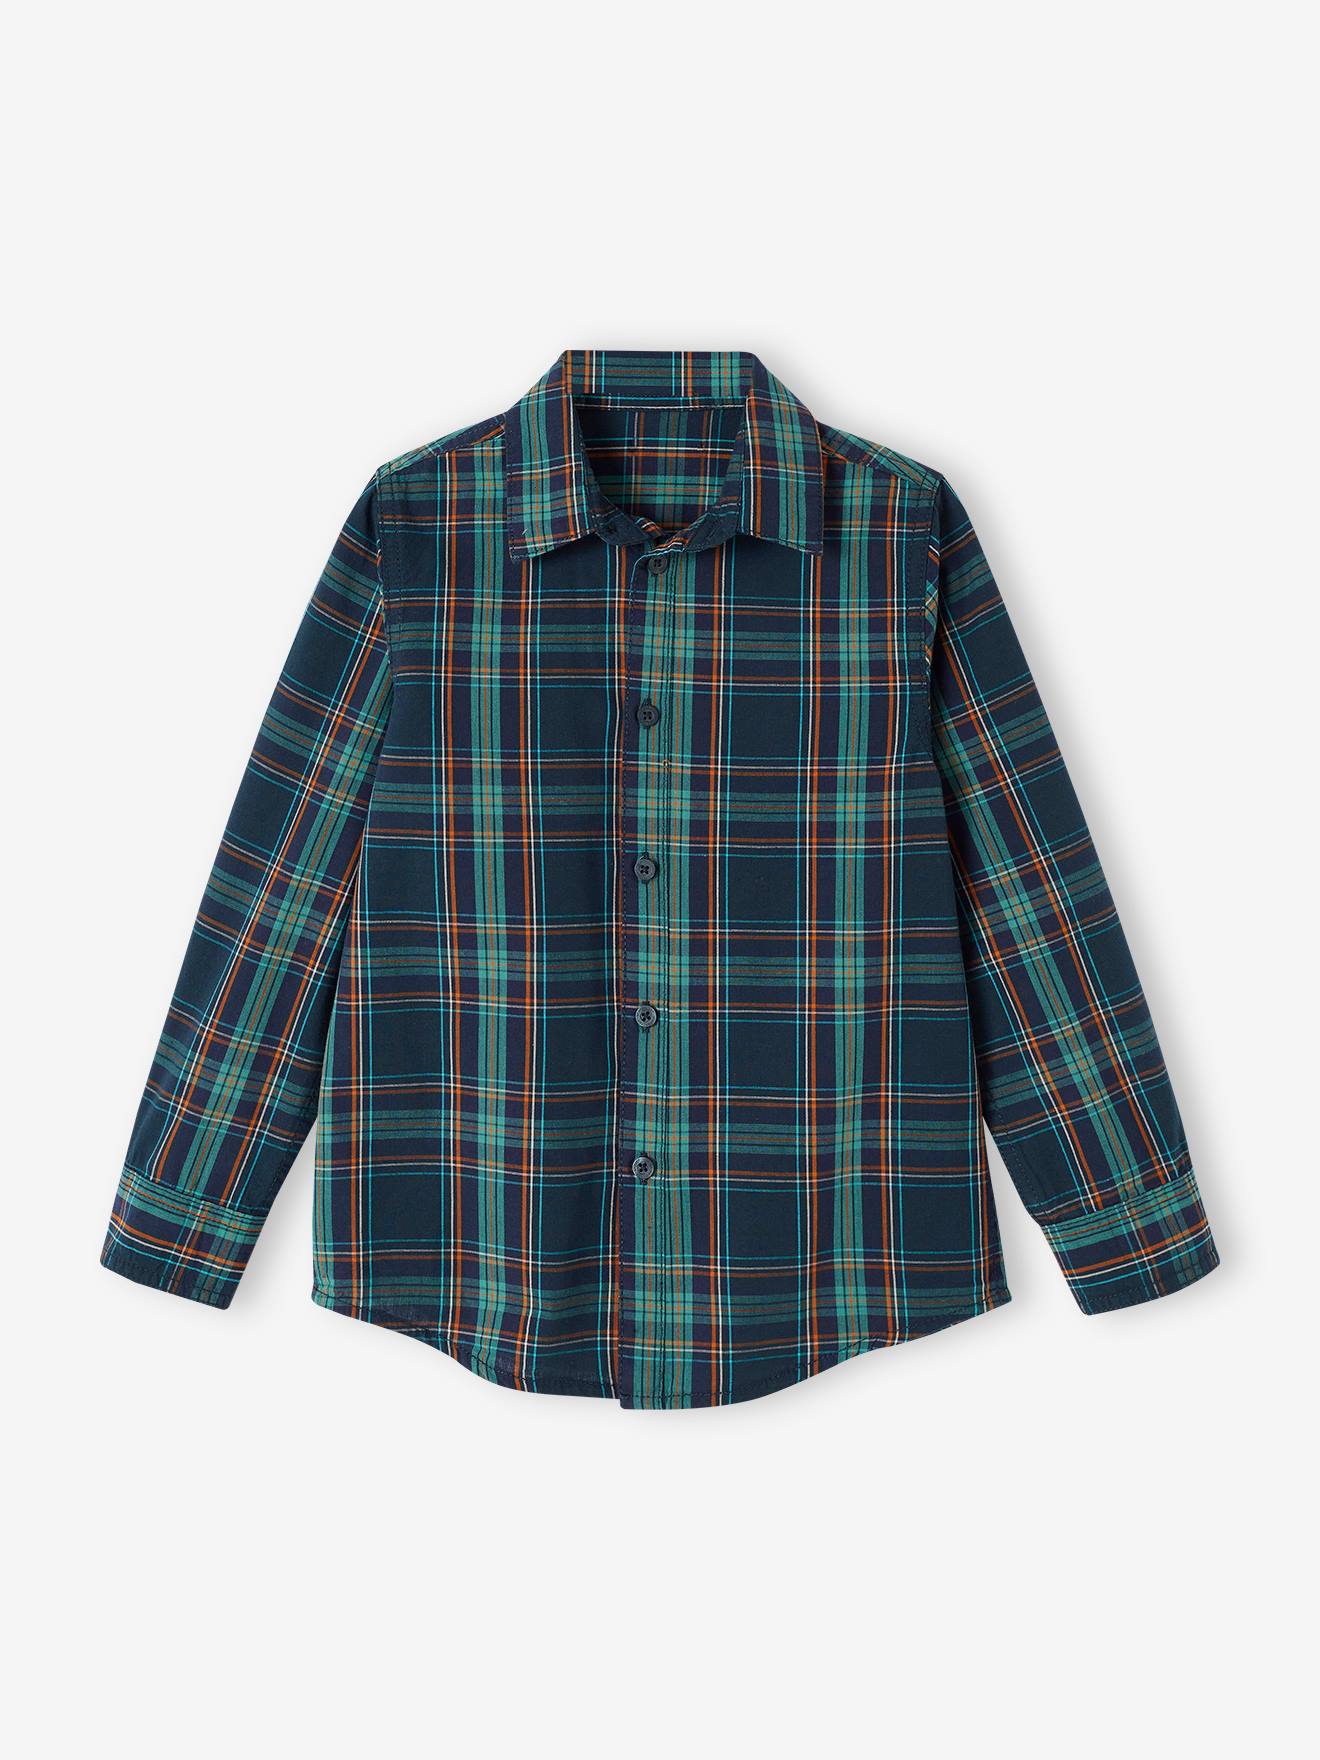 Chequered Shirt for Boys fir green